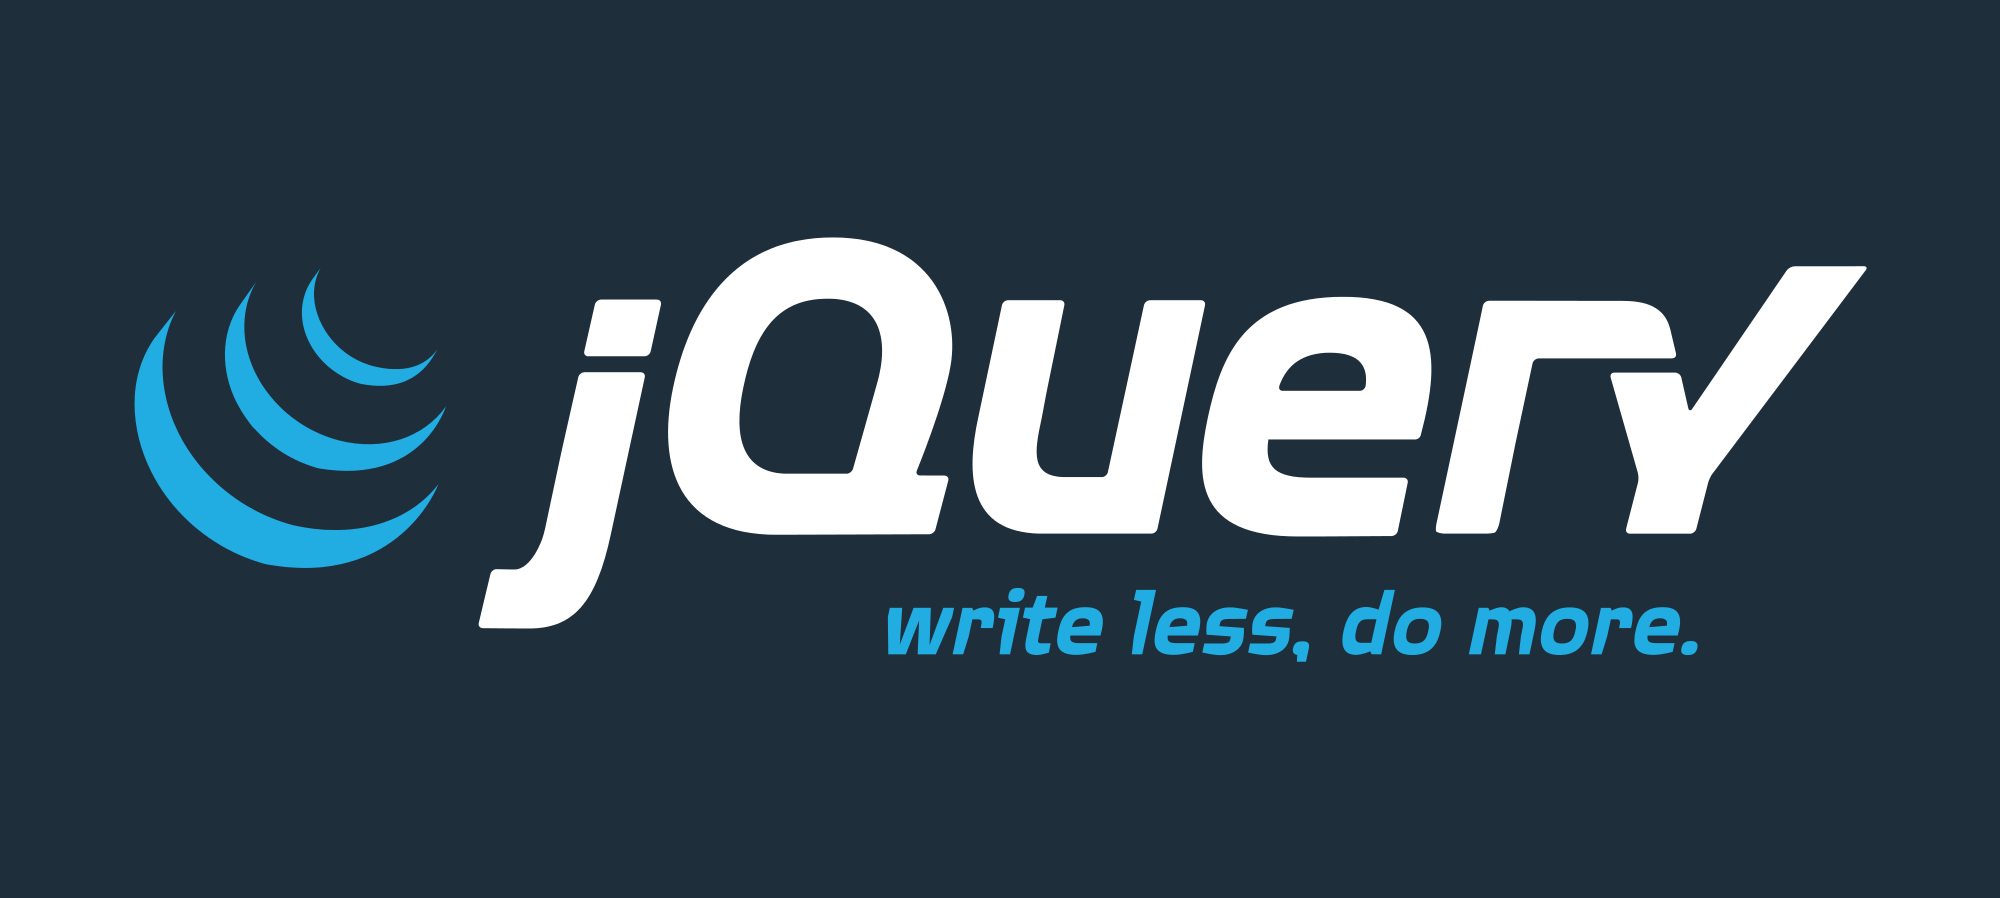 Perbedaan Antara Javascript dan jQuery